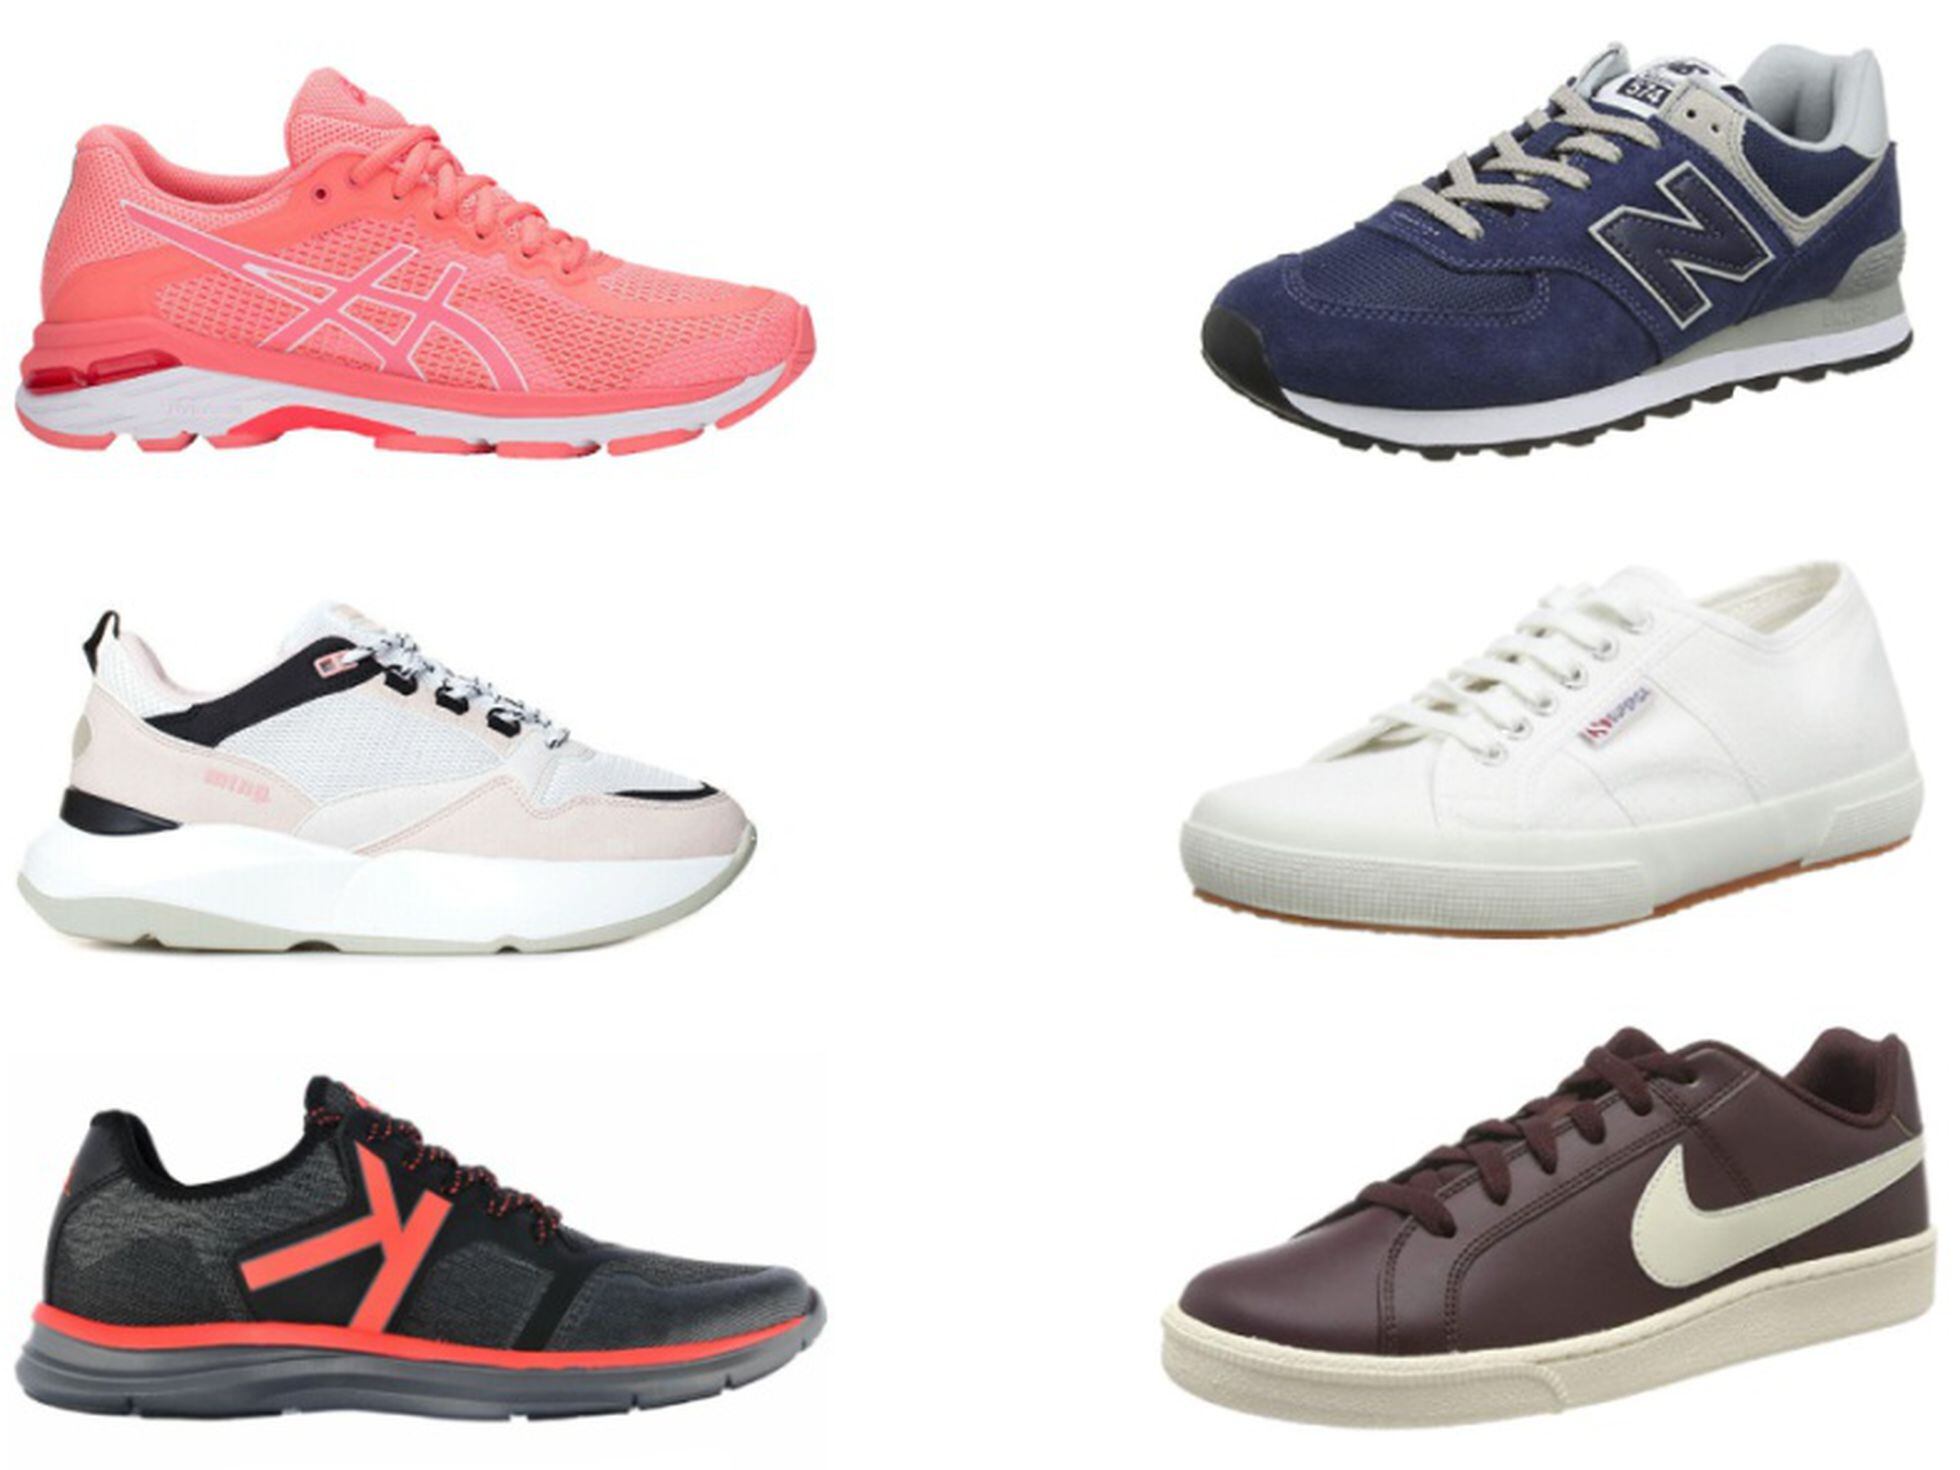 Intacto Alrededores Escarpa Nike, Adidas, Puma o Superga: 15 modelos de zapatillas de marca en rebajas  | Escaparate: compras y ofertas | EL PAÍS